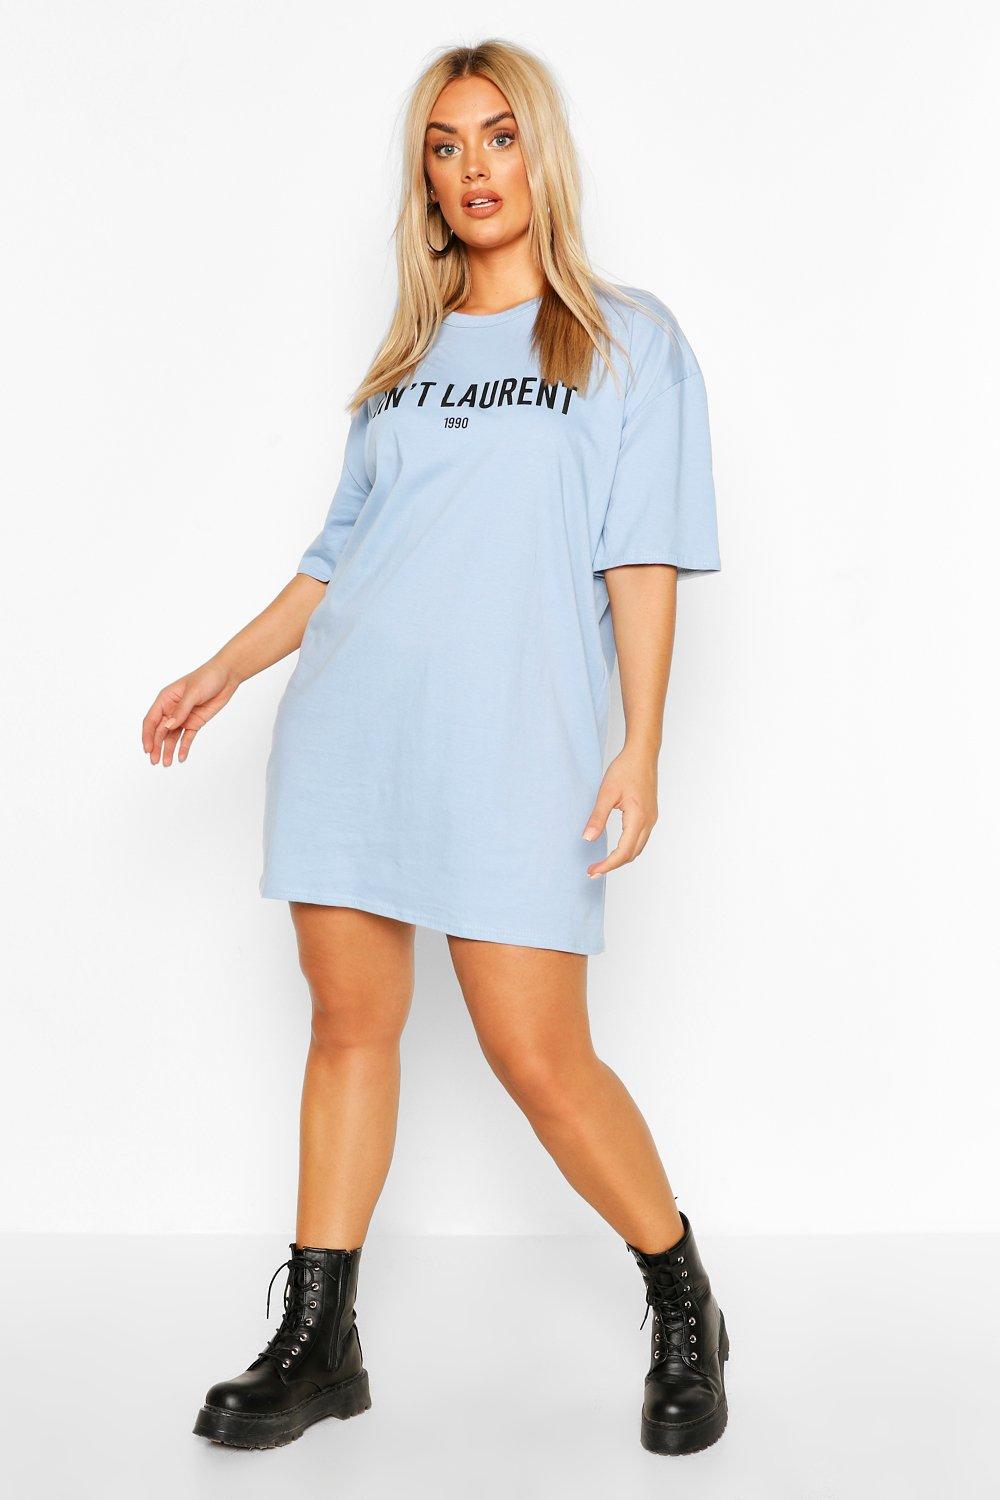 Plus T-Shirt-Kleid mit „Aint Laurent-Slogan BABYBLAU Freizeitmode